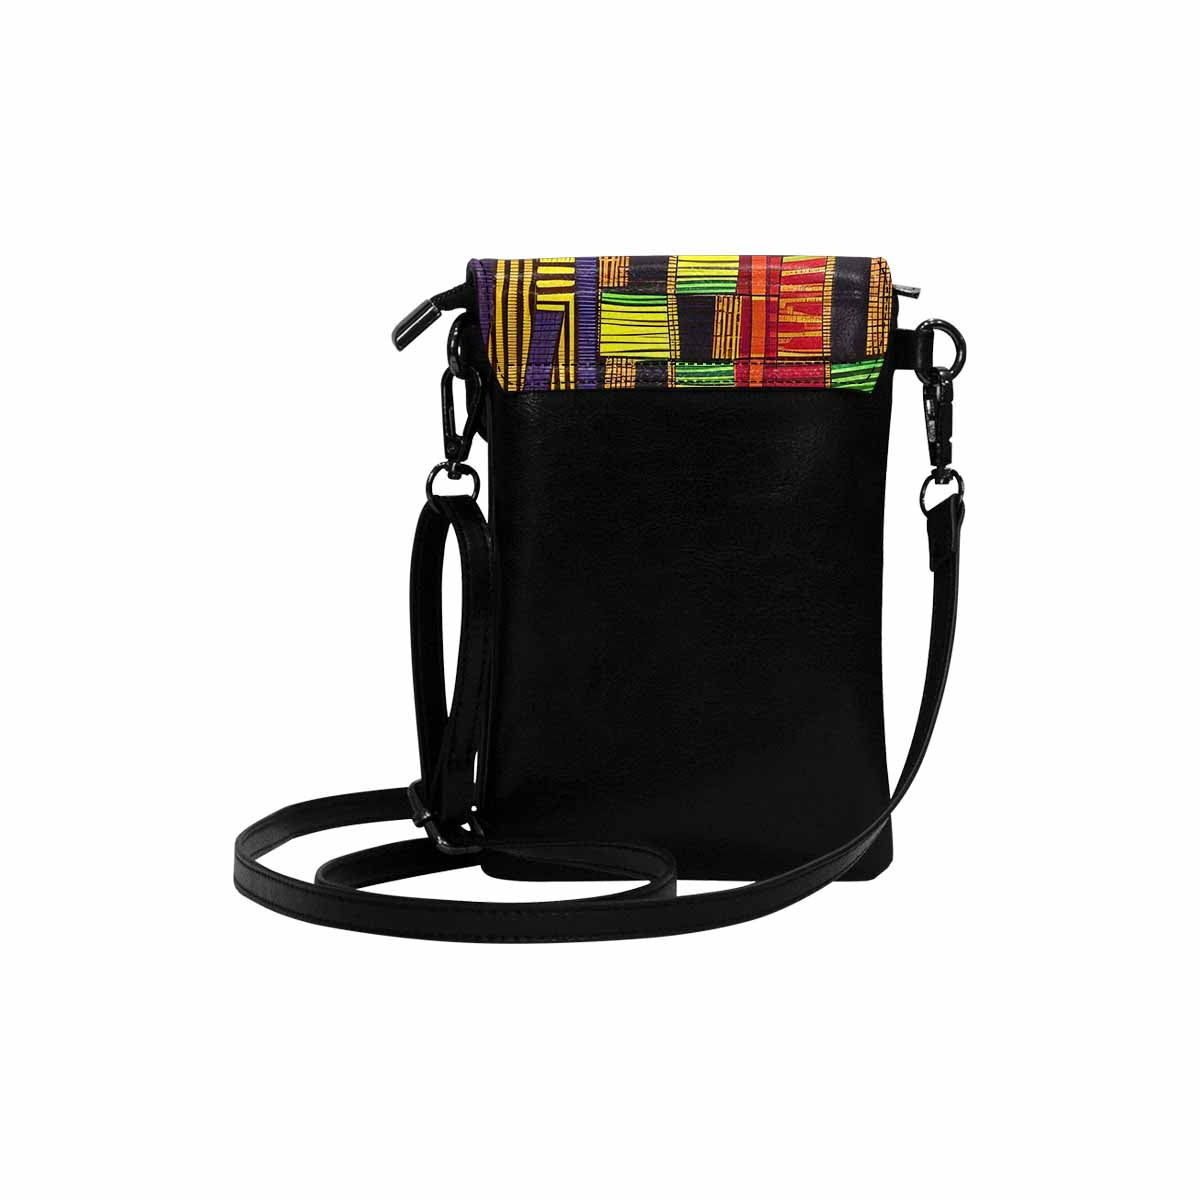 African art, cell phone, keys purse, design 16